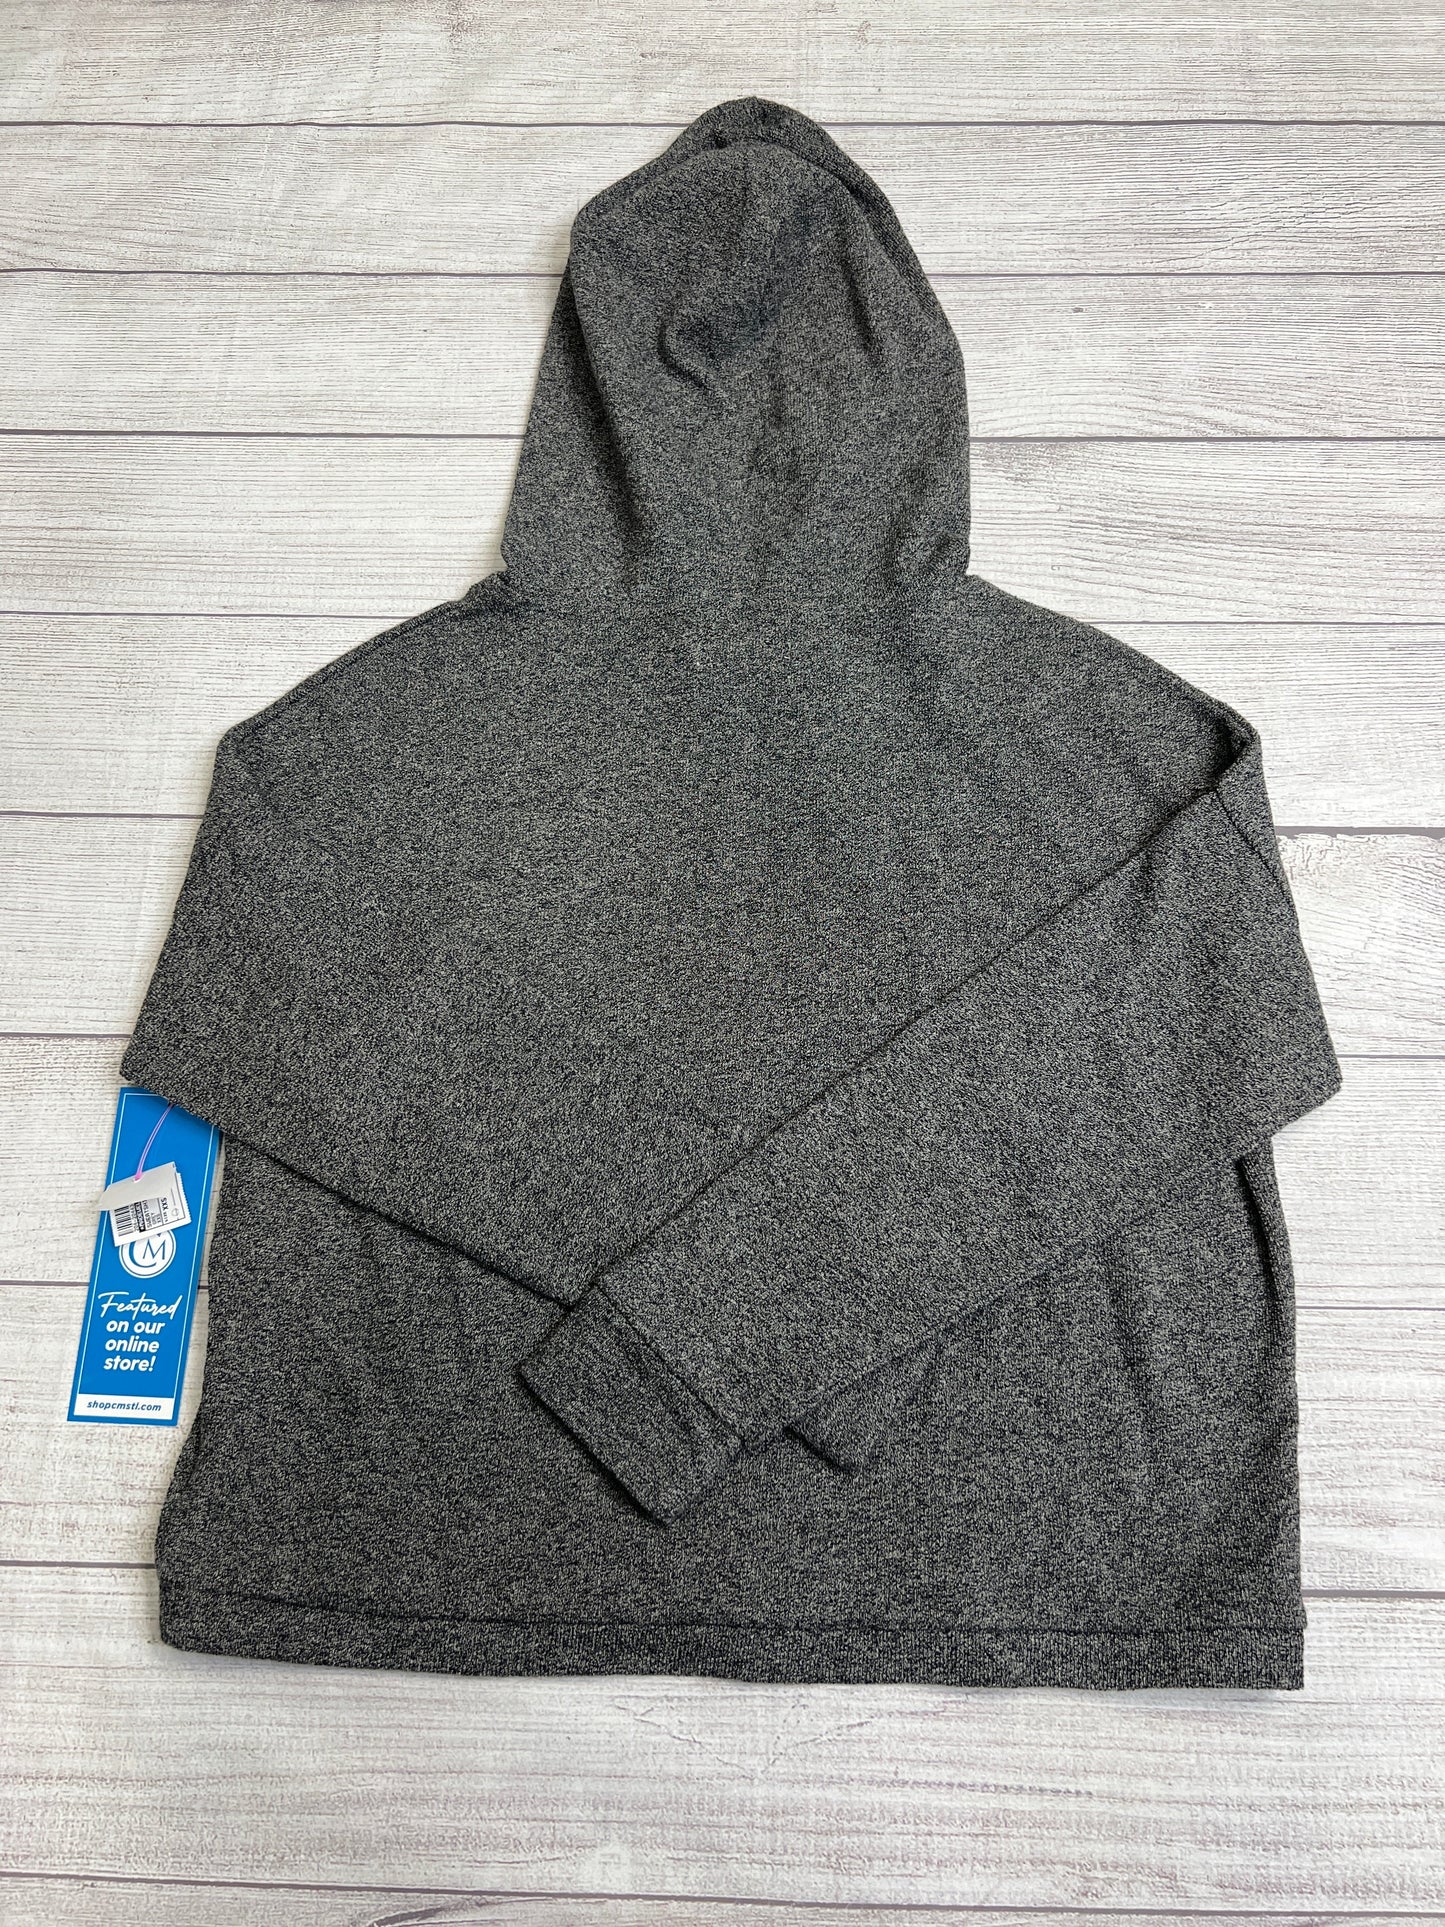 Sweatshirt Hoodie By Madewell  Size: Xxs